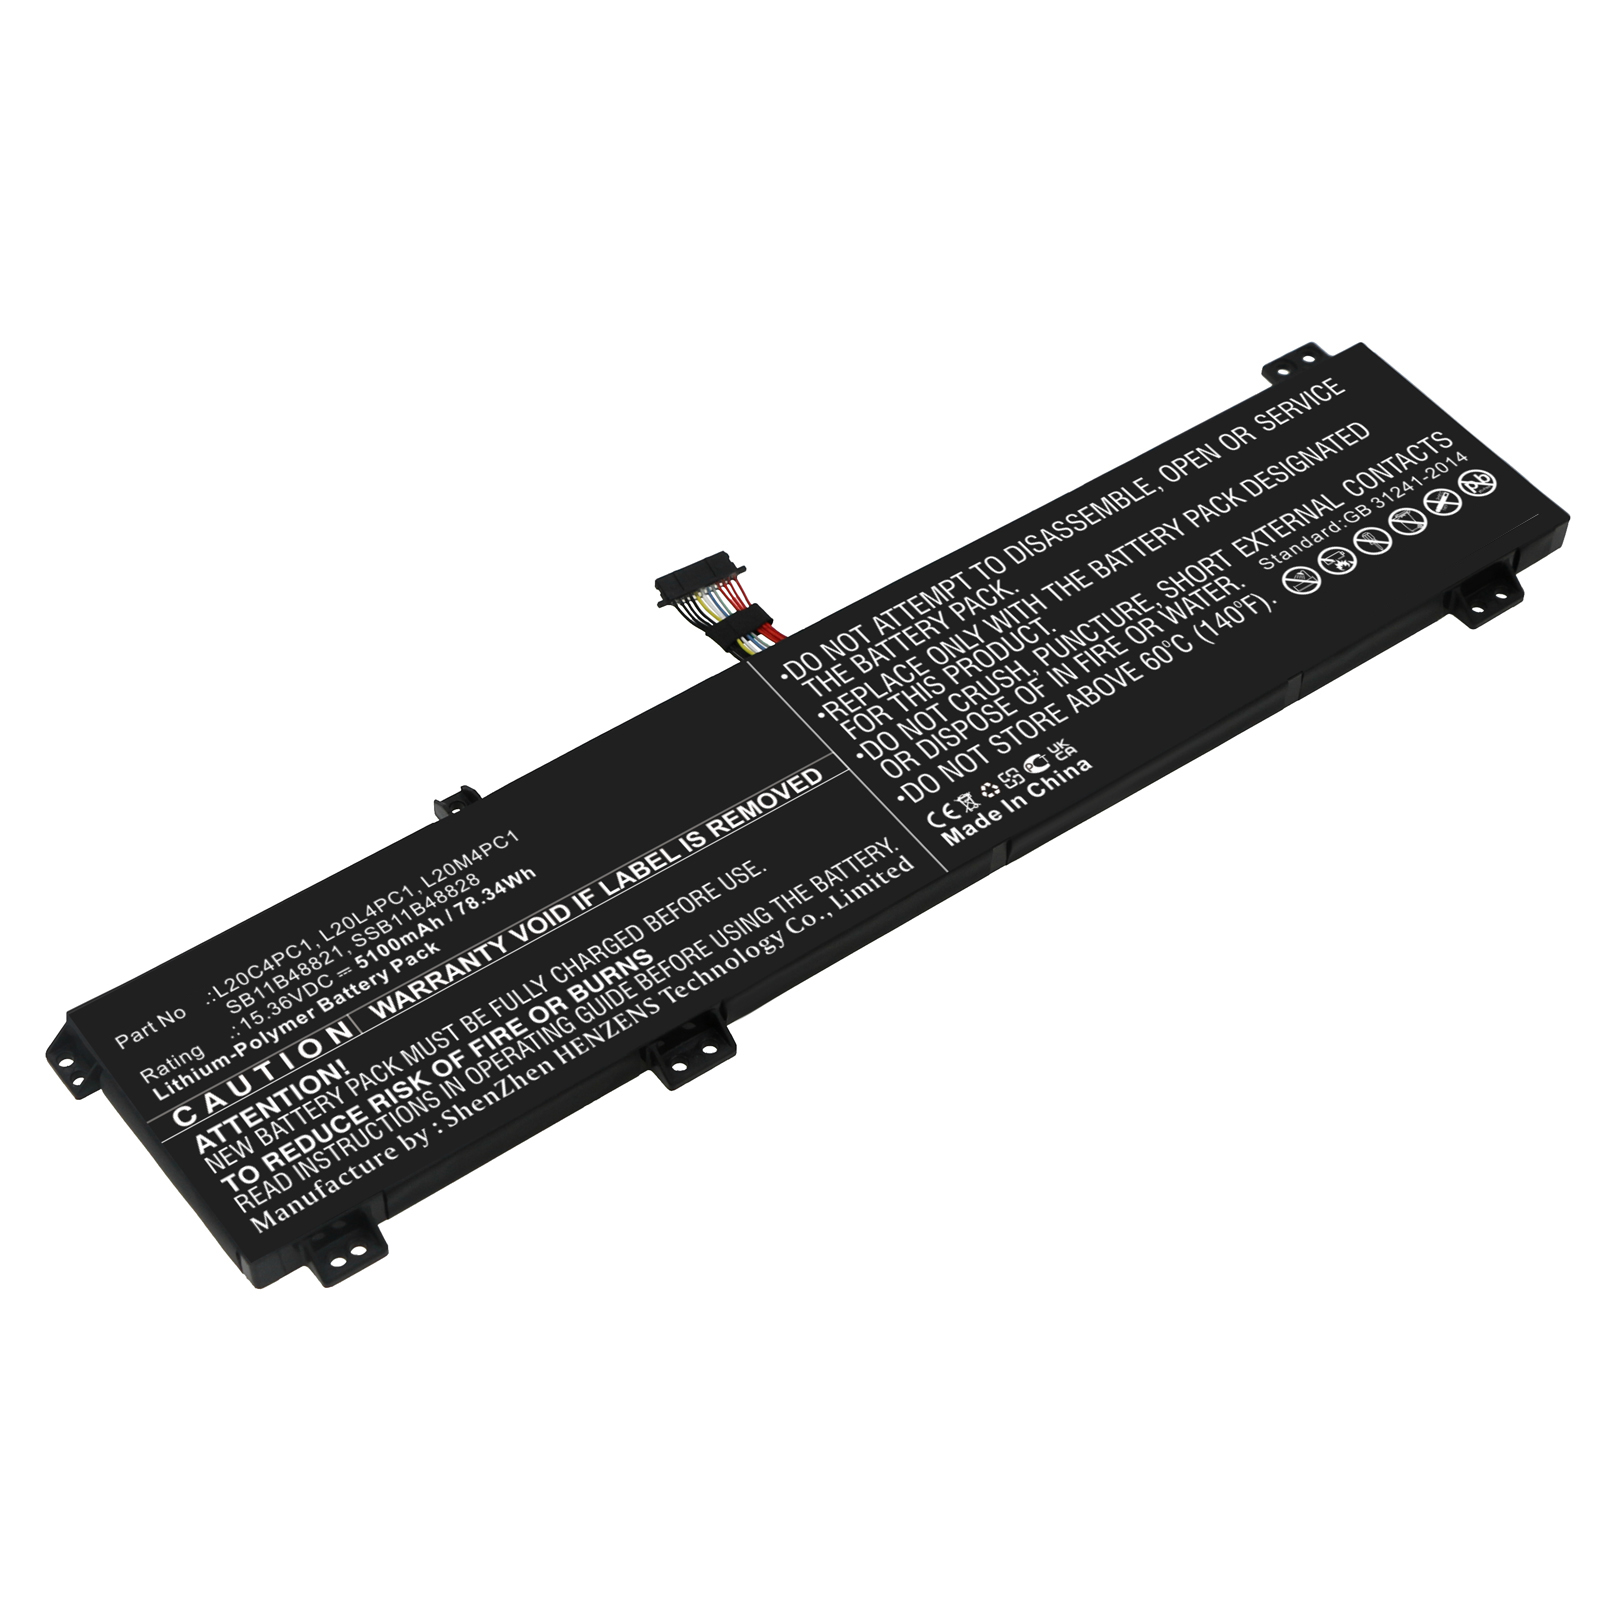 Synergy Digital Laptop Battery, Compatible with Lenovo L20C4PC1 Laptop Battery (Li-Pol, 15.36V, 5100mAh)